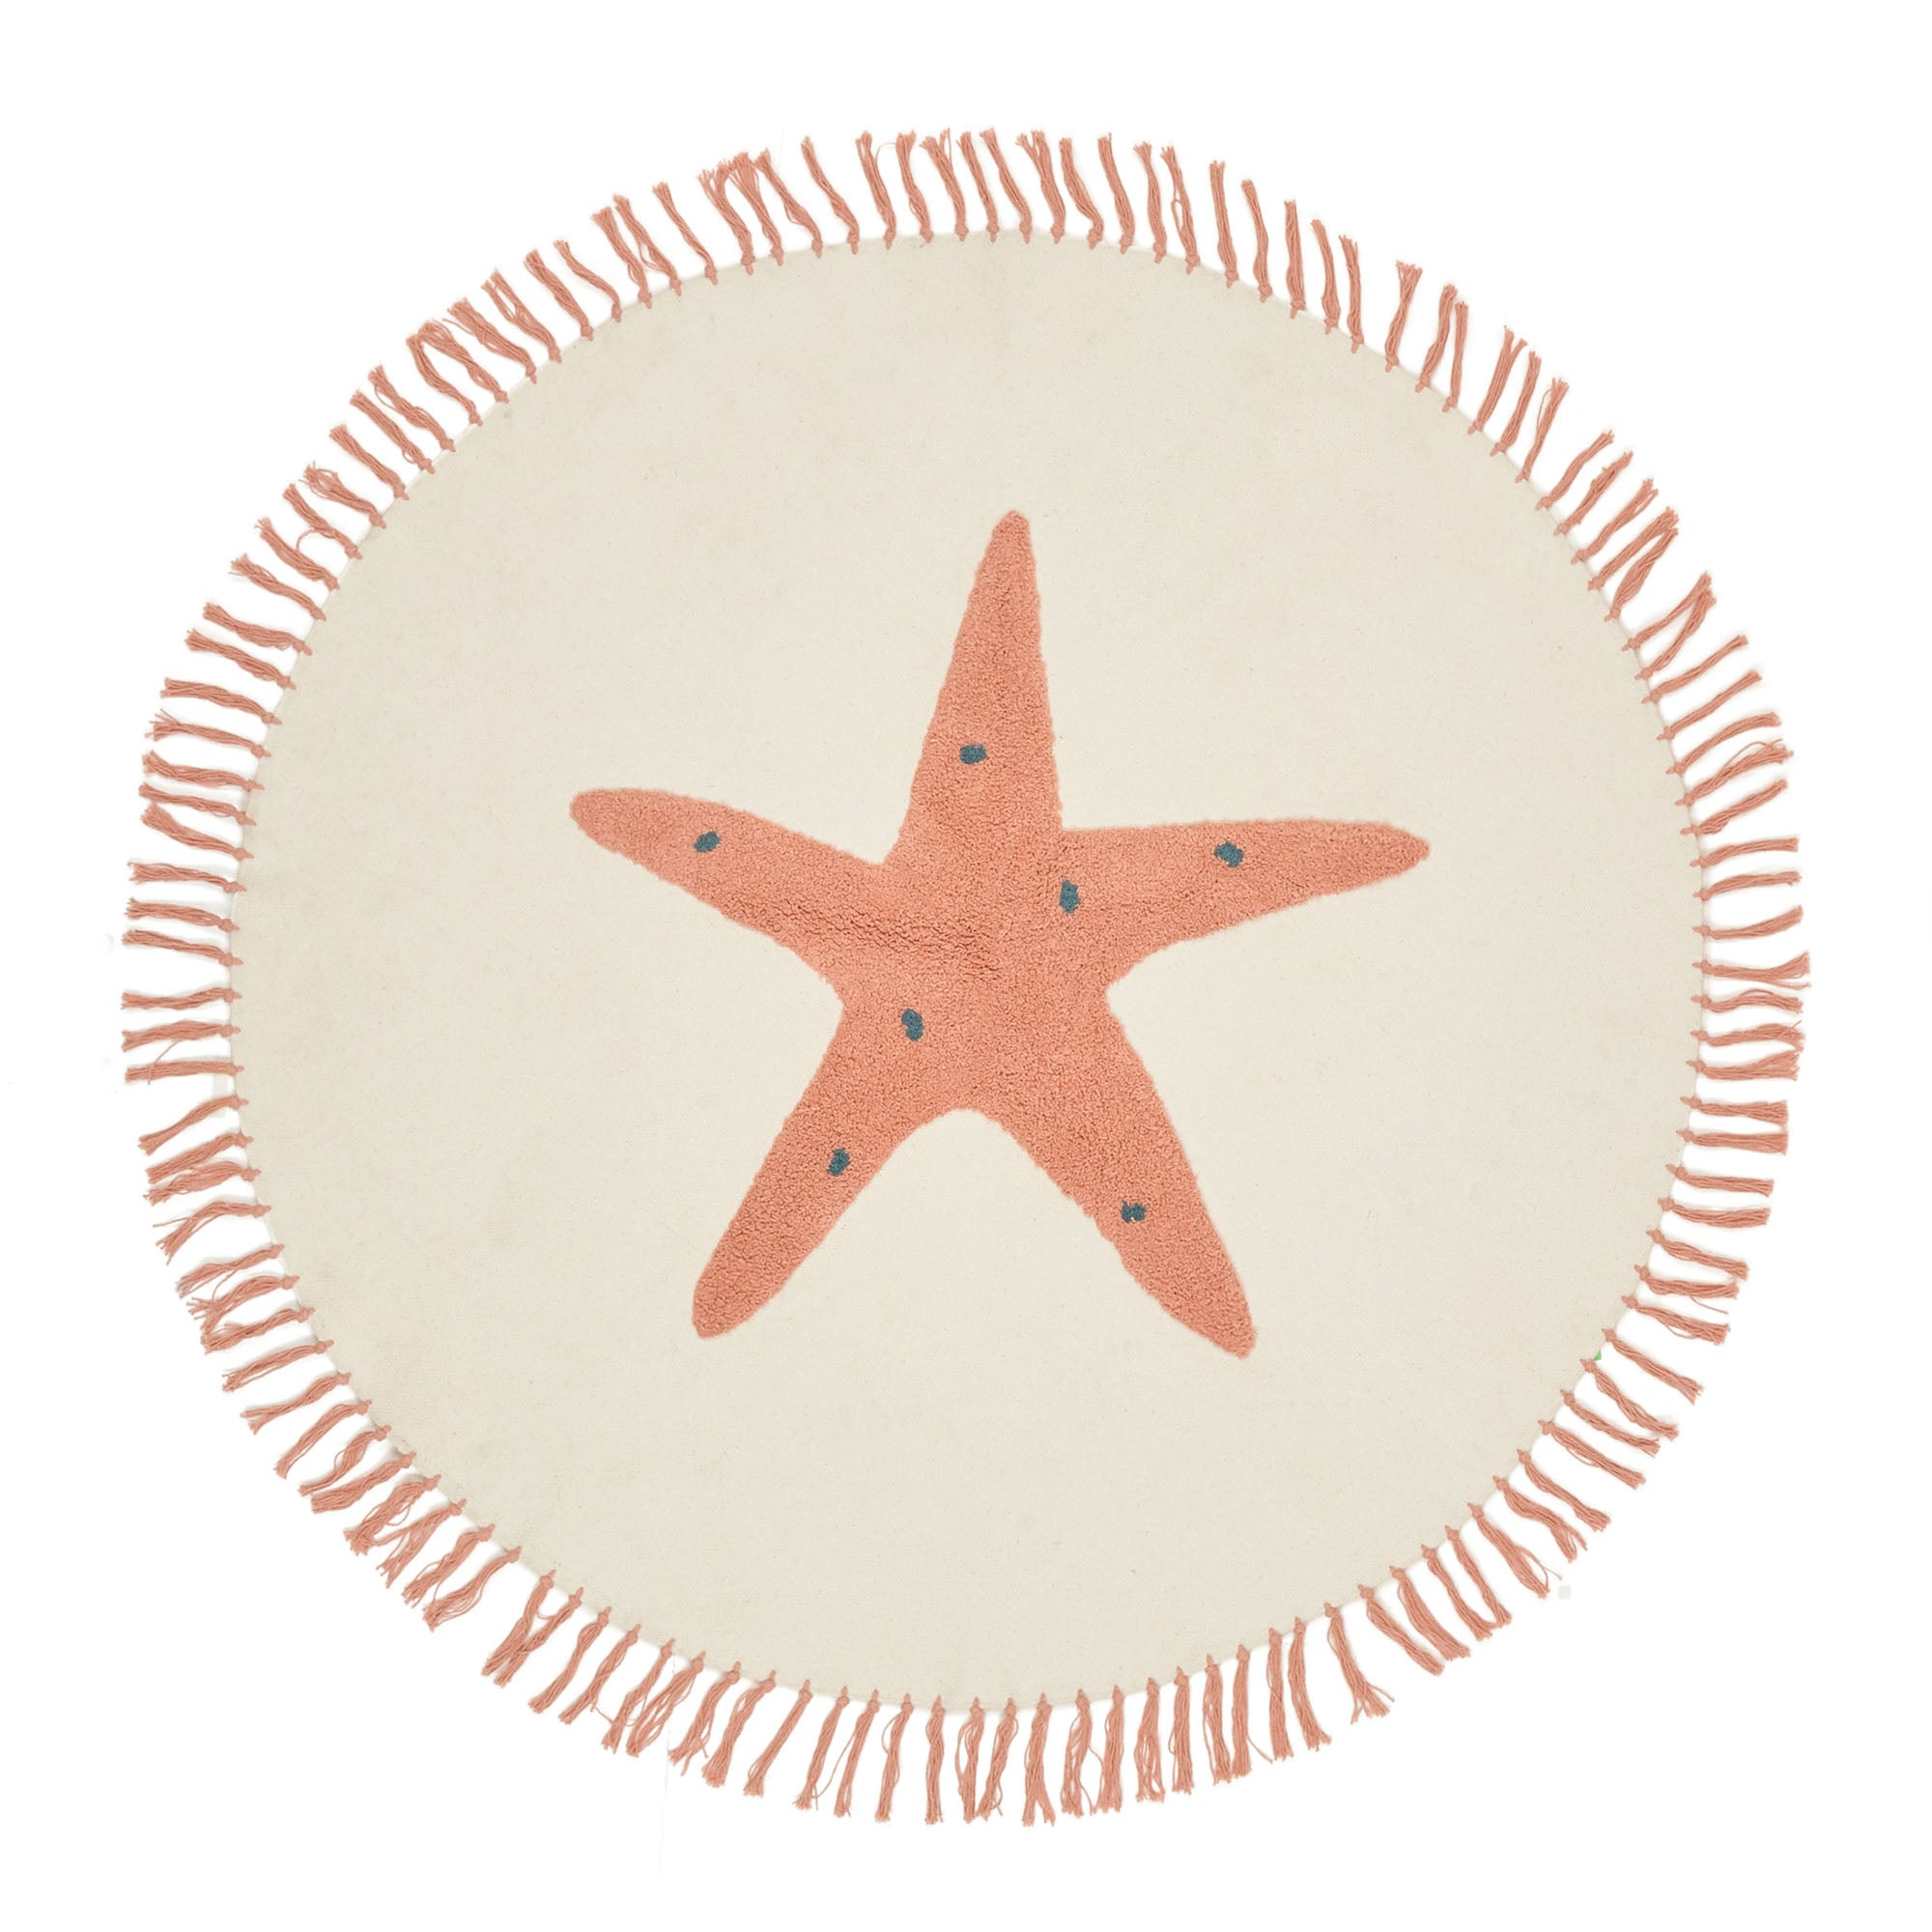 Talia kerek szőnyeg, 100% pamut, narancssárga tengeri csillaggal, Ø 120 cm